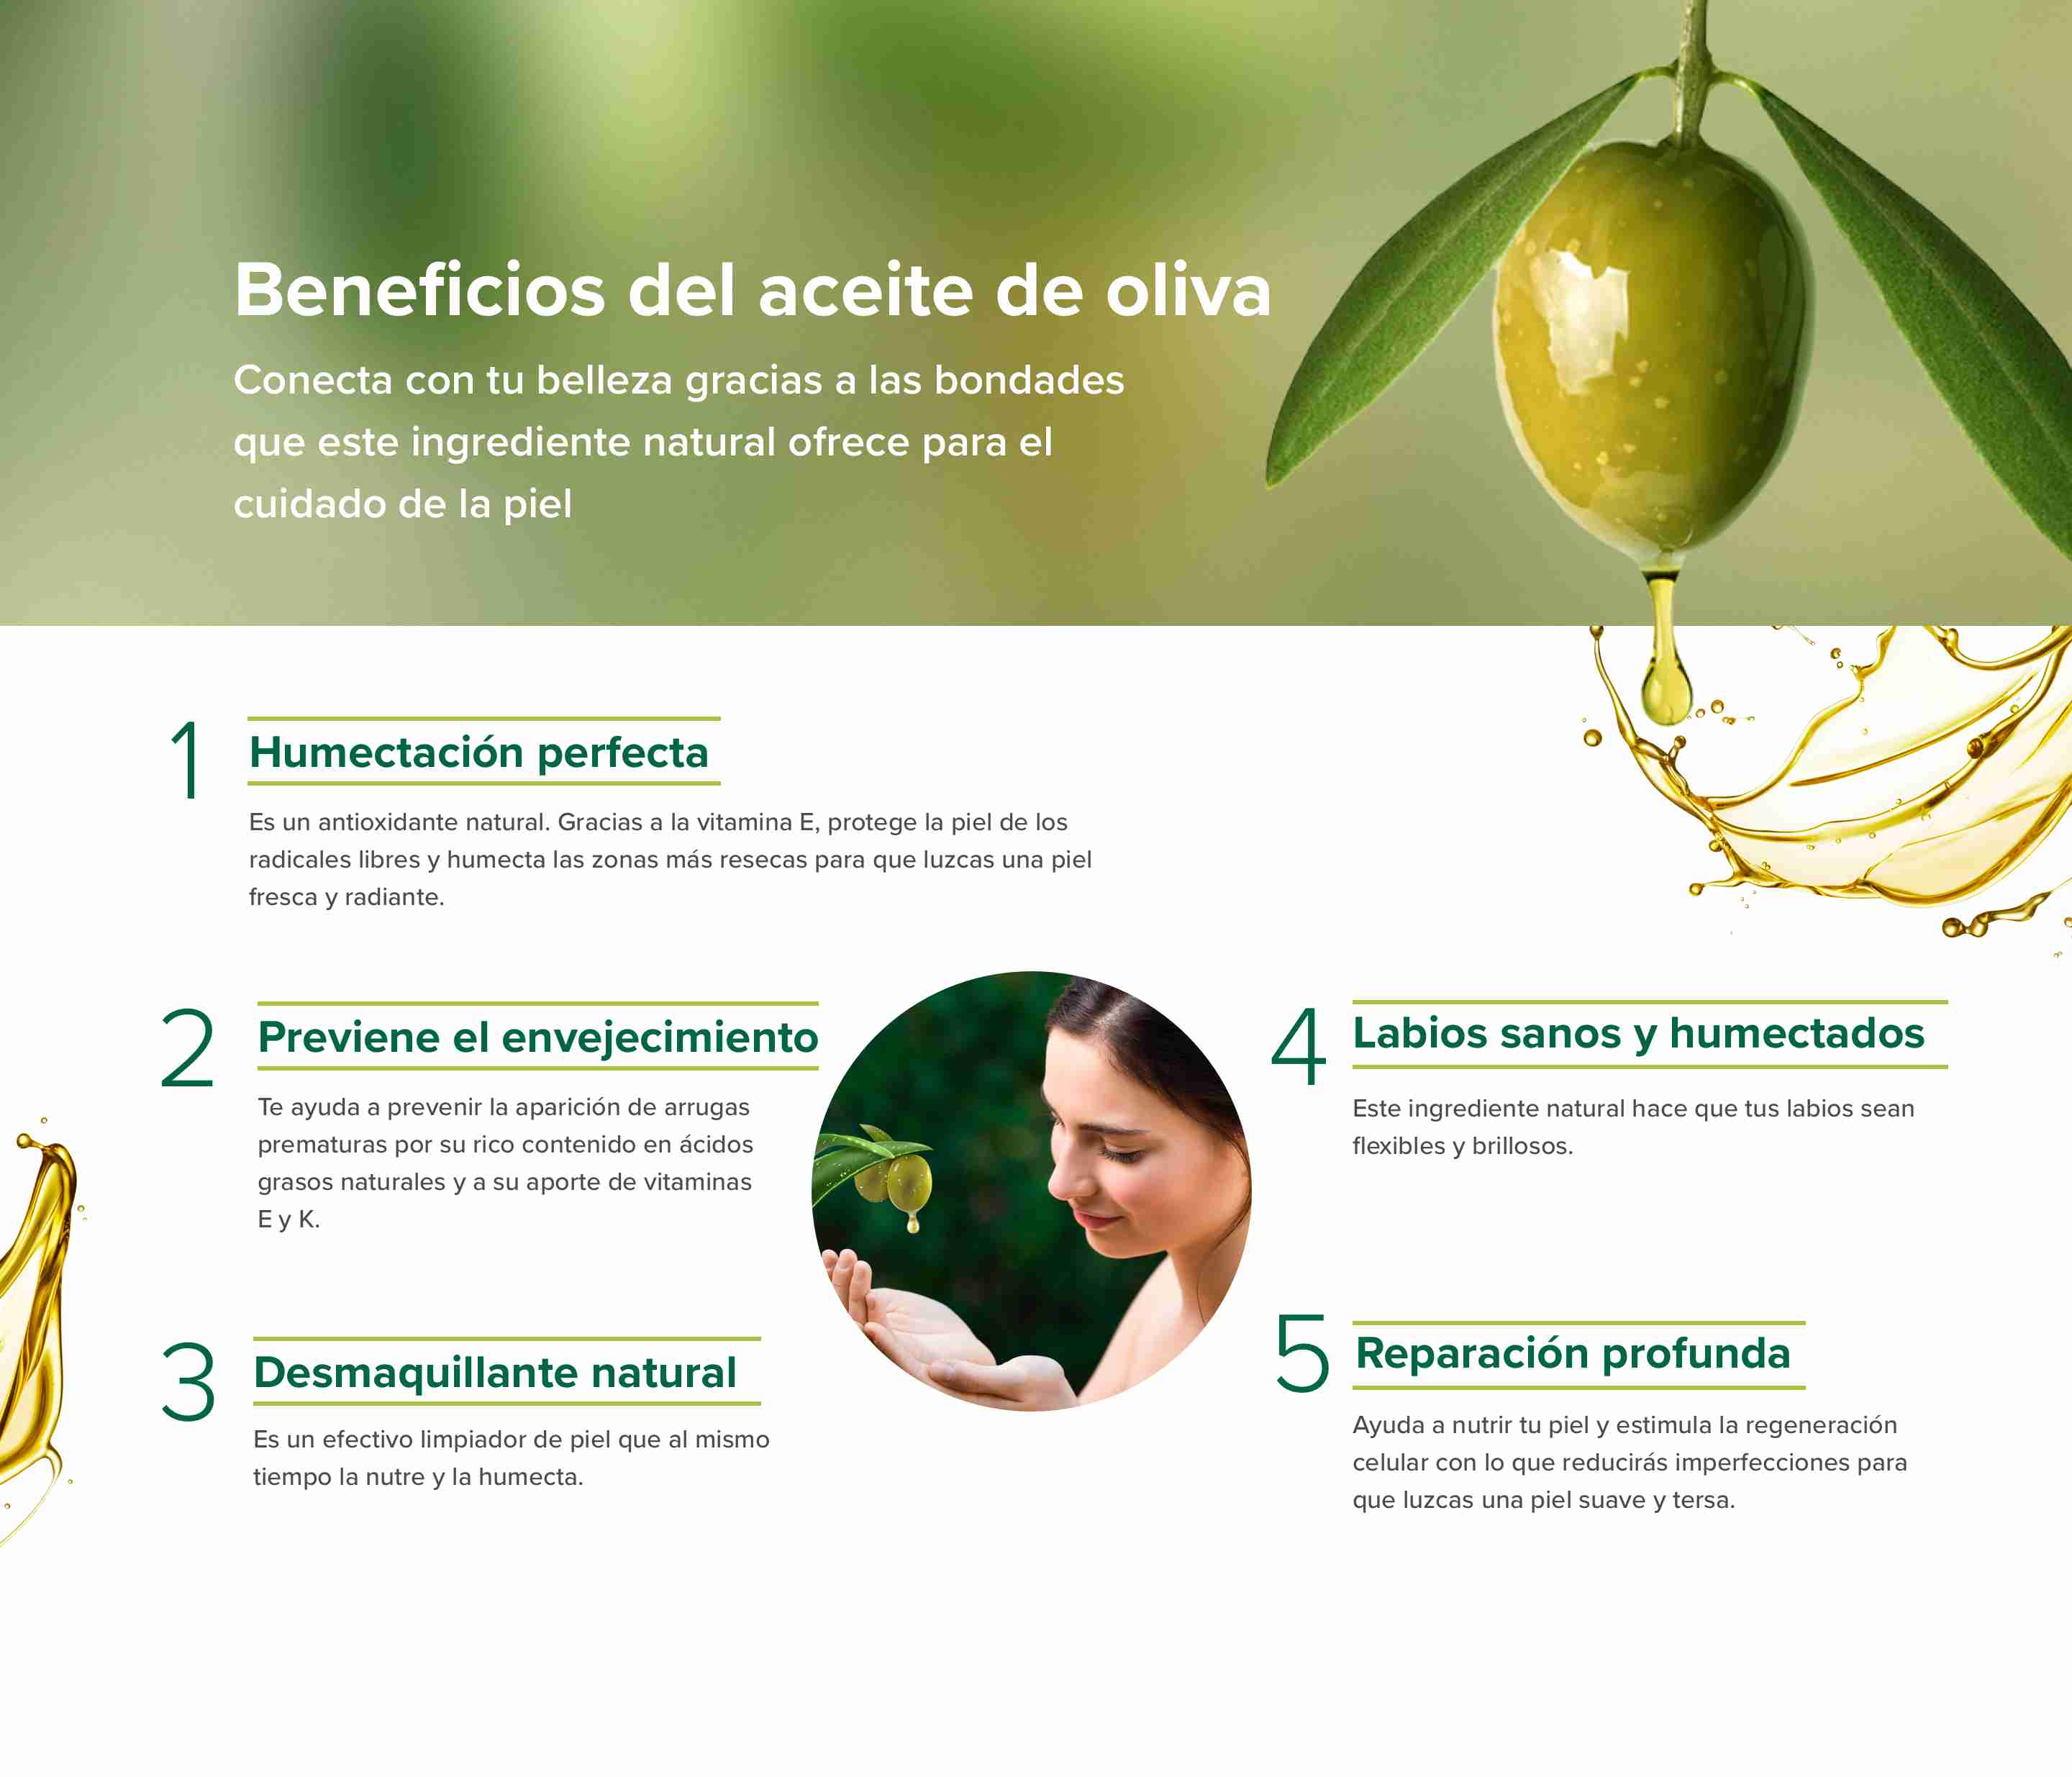 infografía sobre los beneficios del aceite de oliva para el cuidado de la piel